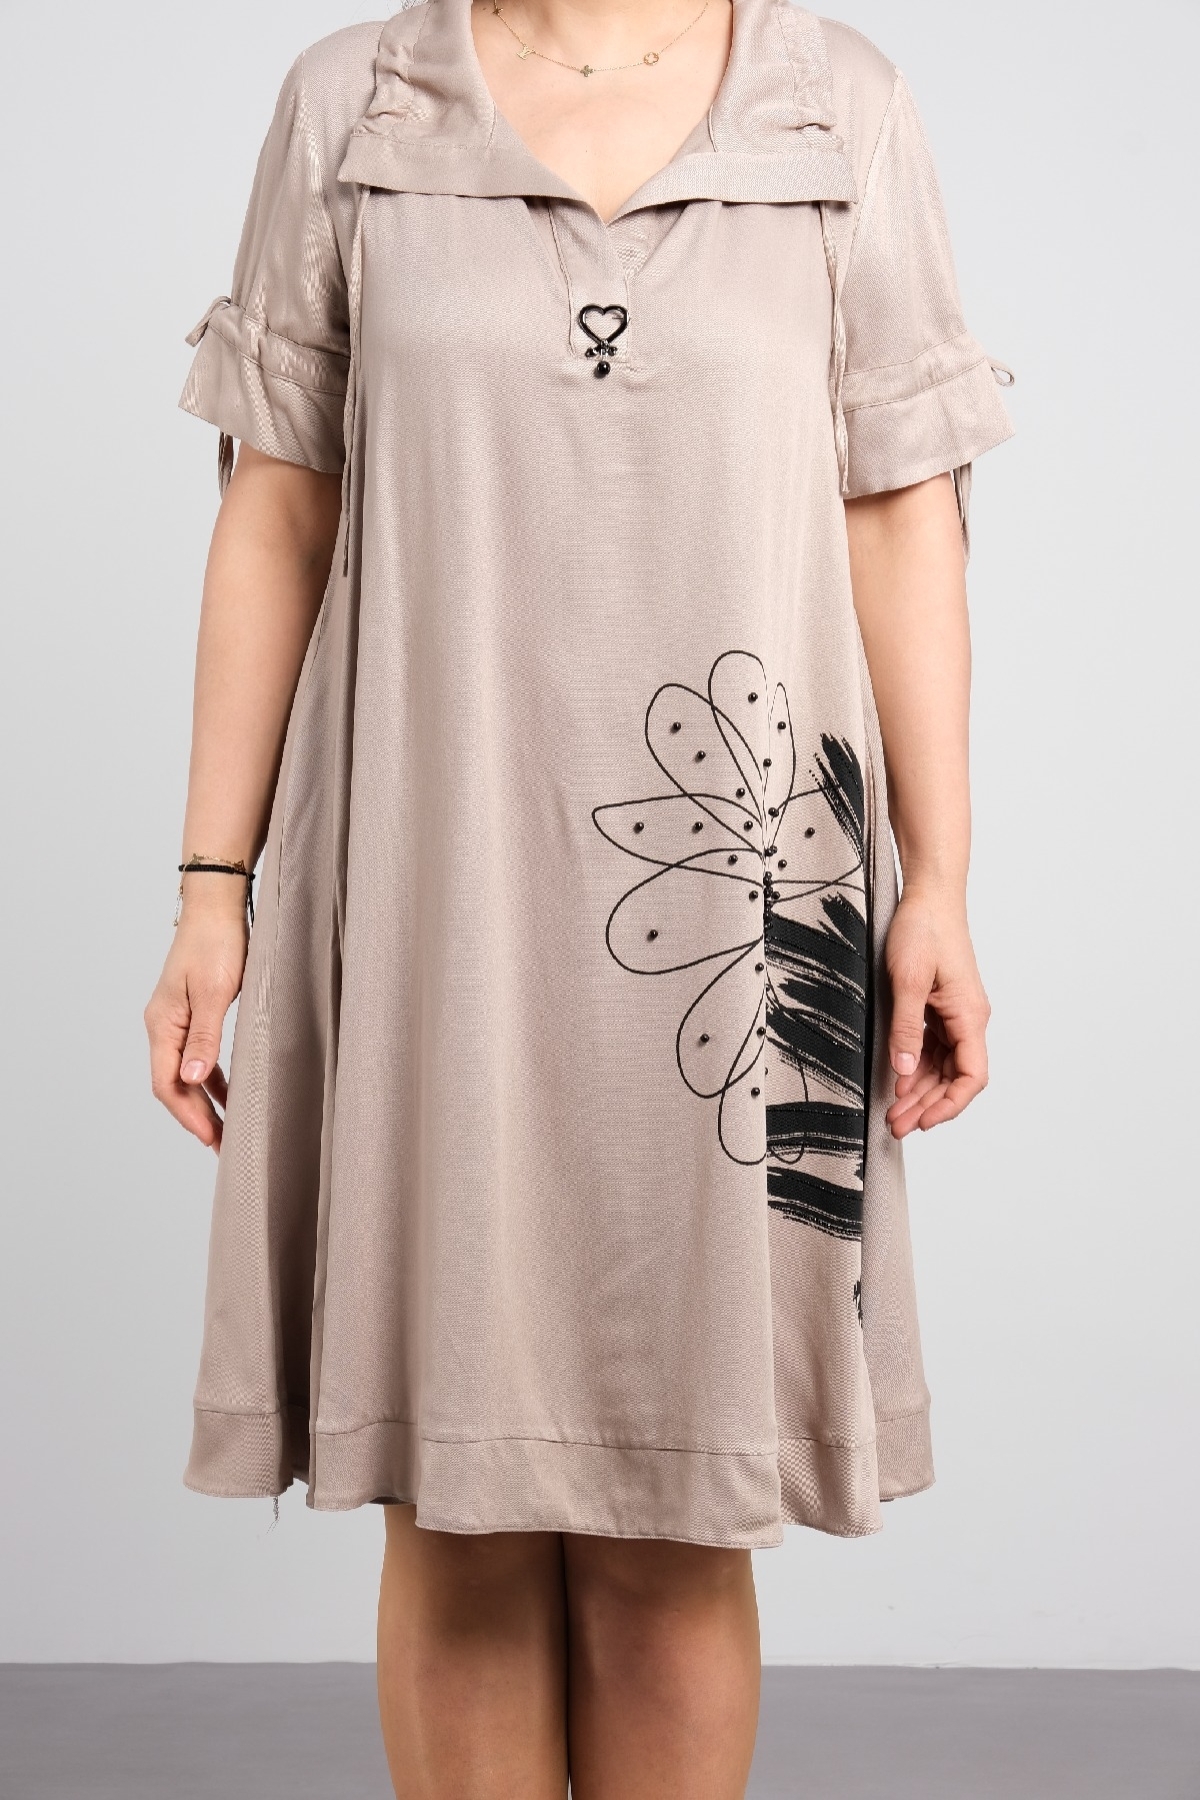 Battal beden desenli kısa kollu kadın elbise, diz hizasında şık elbise.